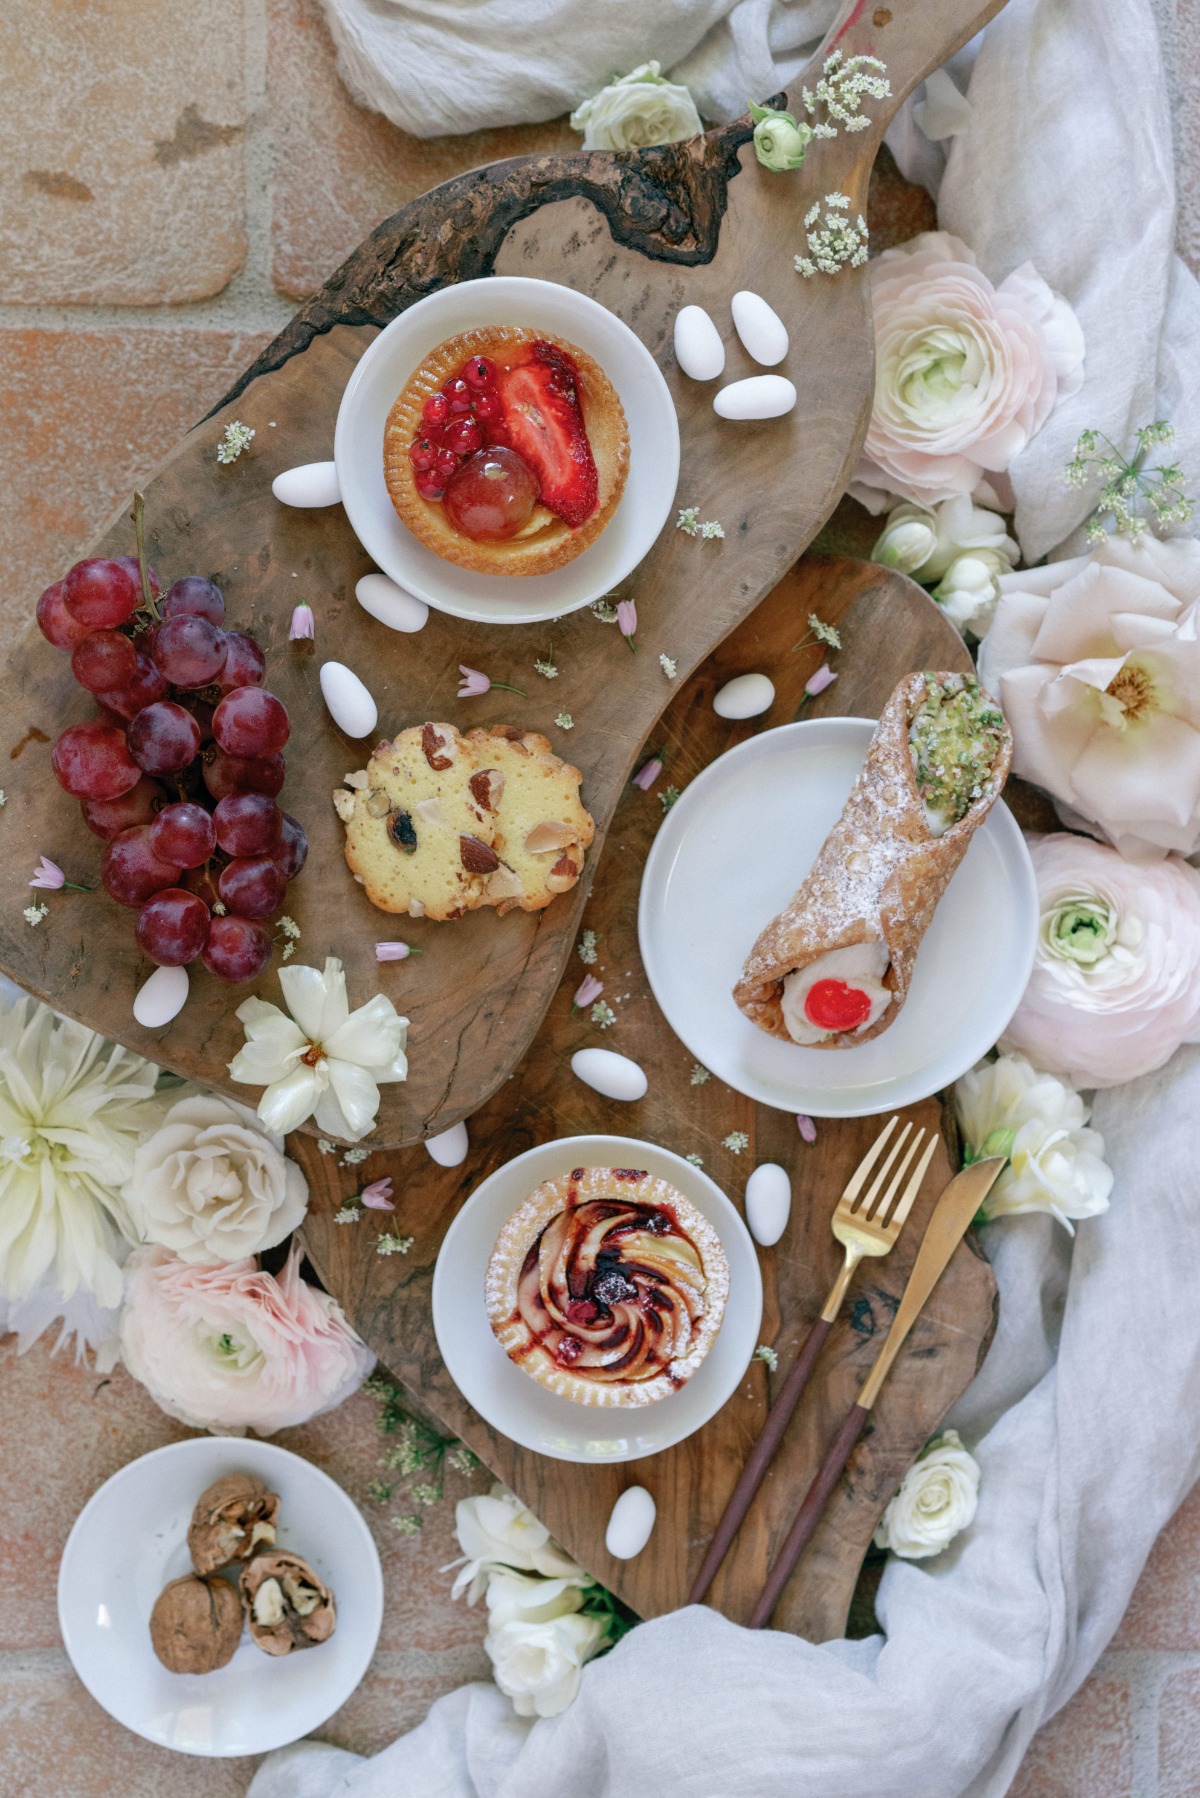 Delicious, rustic Italian wedding reception dessert menu